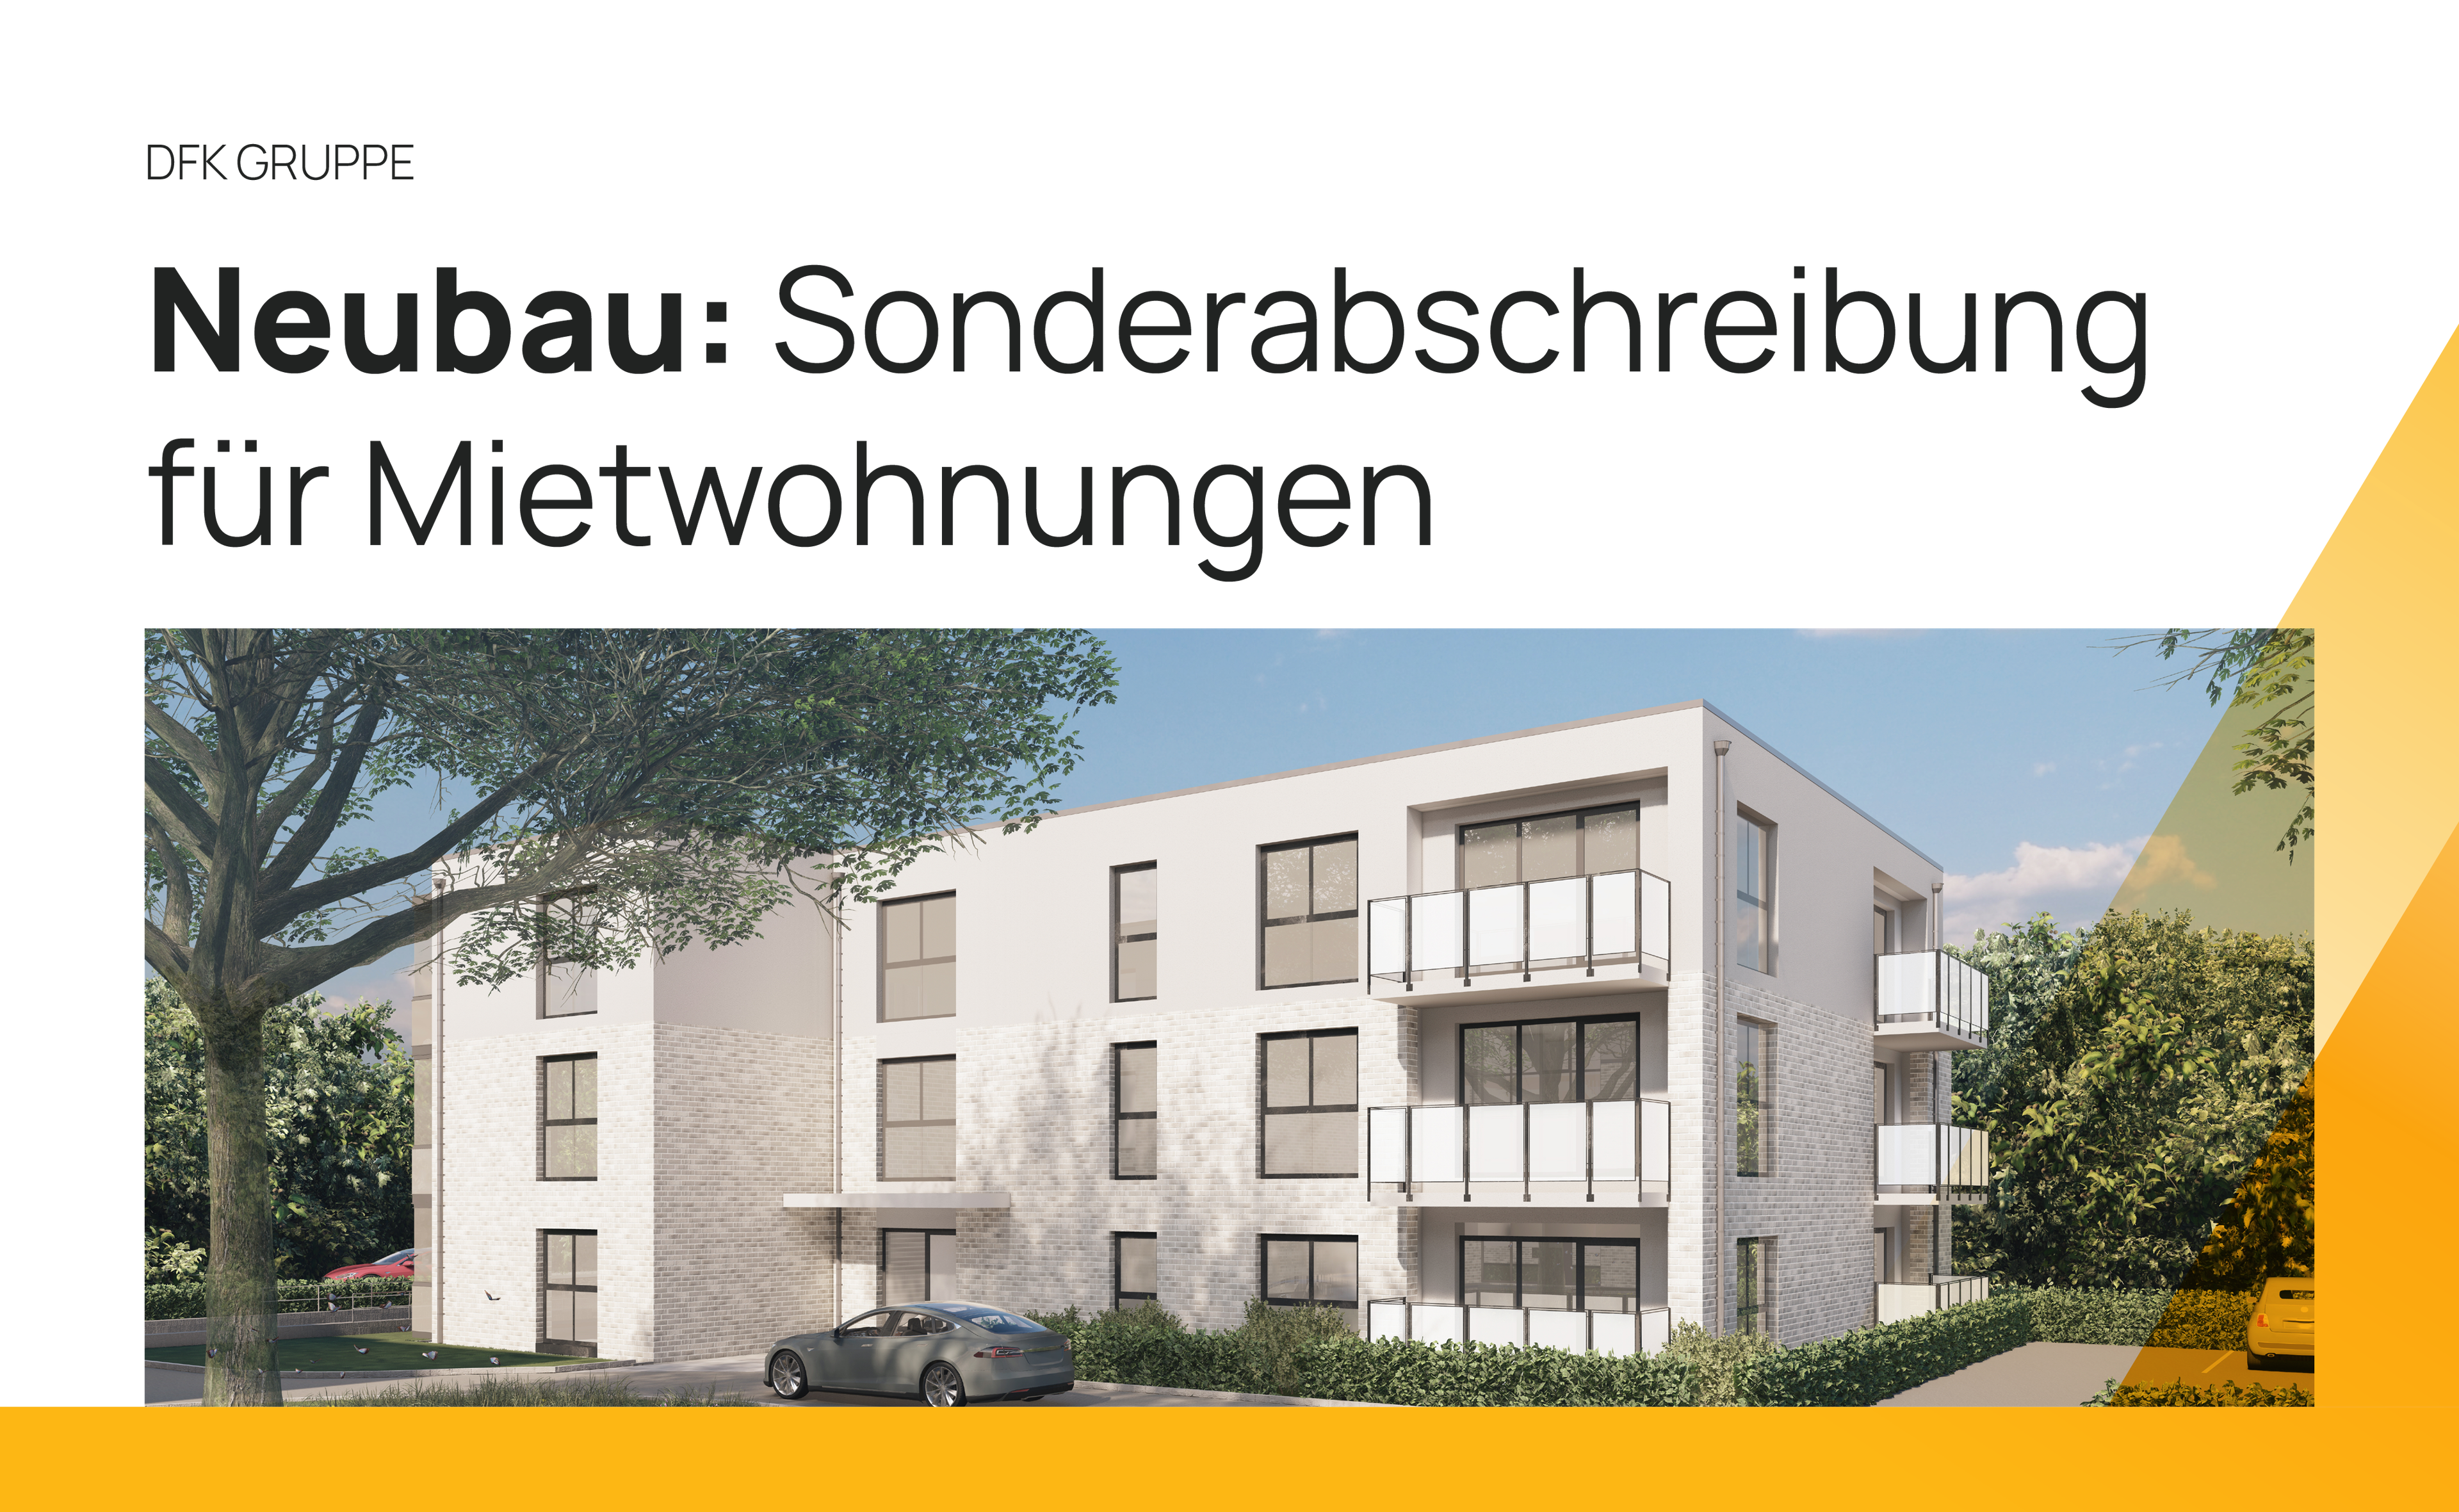 Neubau: Sonderabschreibung für Mietwohnungen